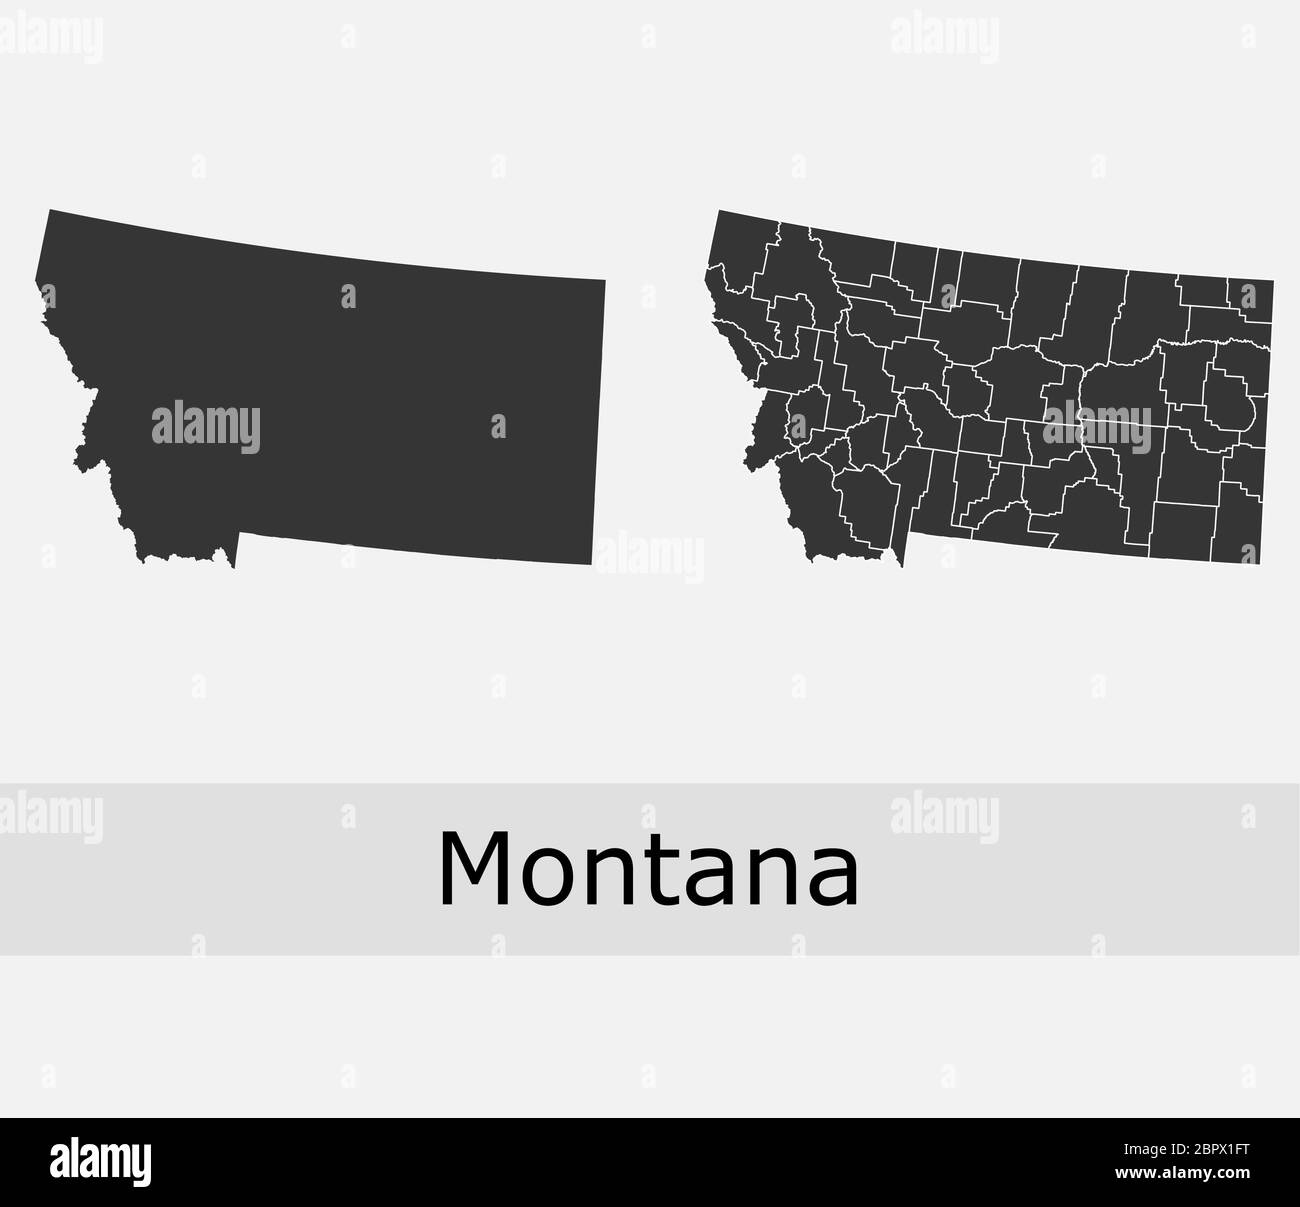 Montana Karten Vektor skizzieren Grafschaften, Townships, Regionen, Gemeinden, Departements, Grenzen Stock Vektor